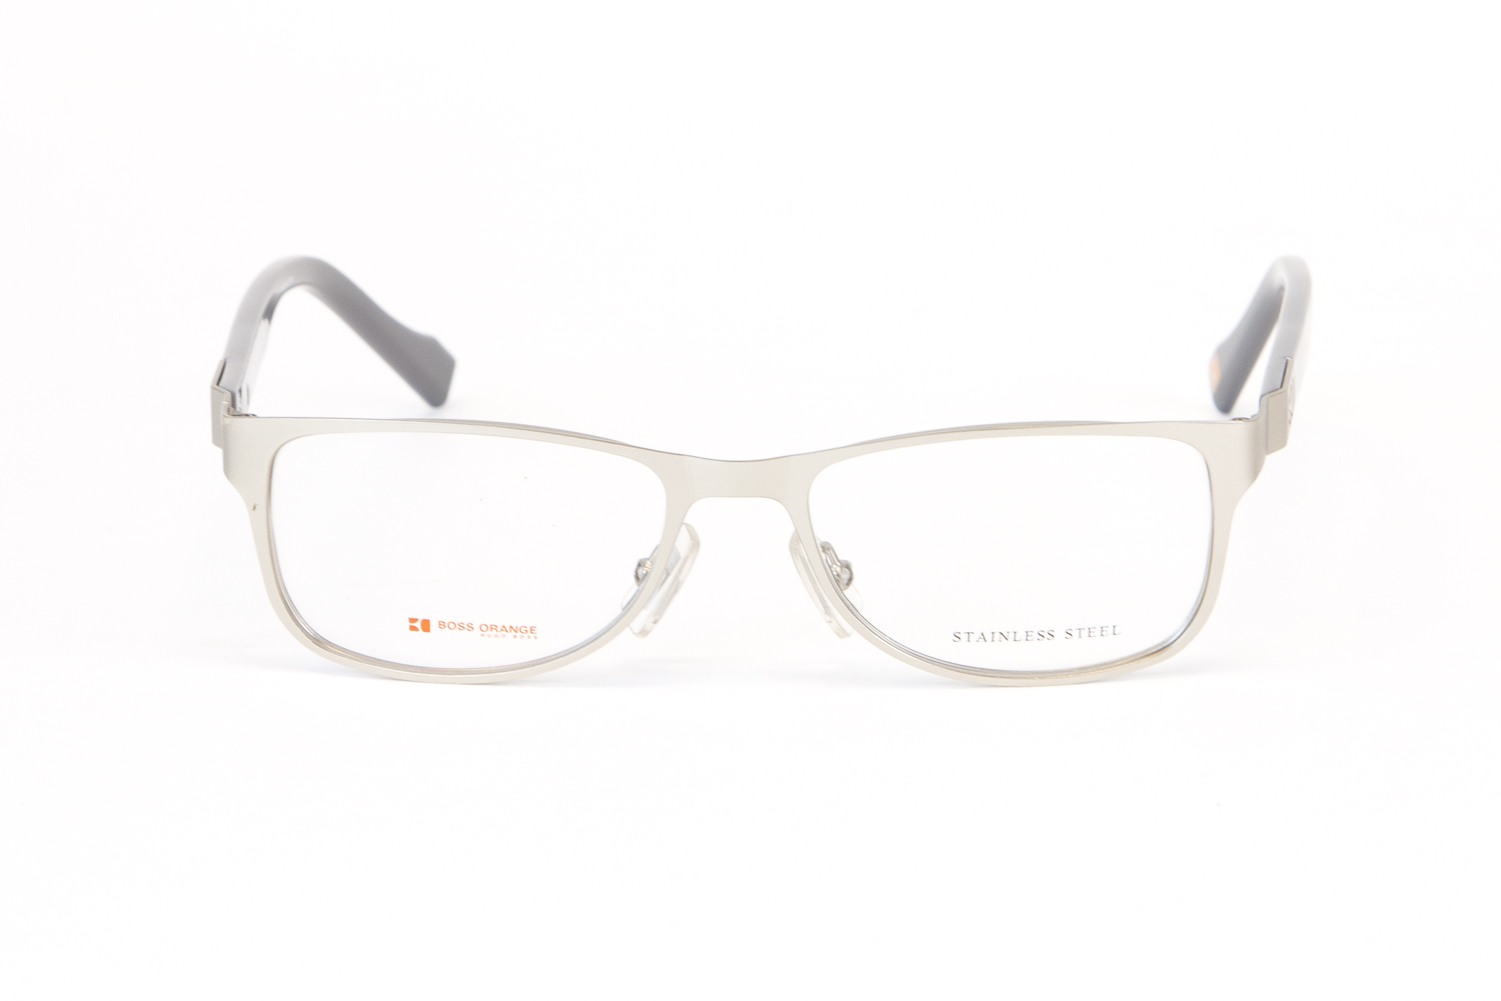 konsulent Vejrtrækning Sammenligning BOSS ORANGE Stainless Steel Rectangular Eyeglass Frames 50mm B0081 $260 NEW  | eBay